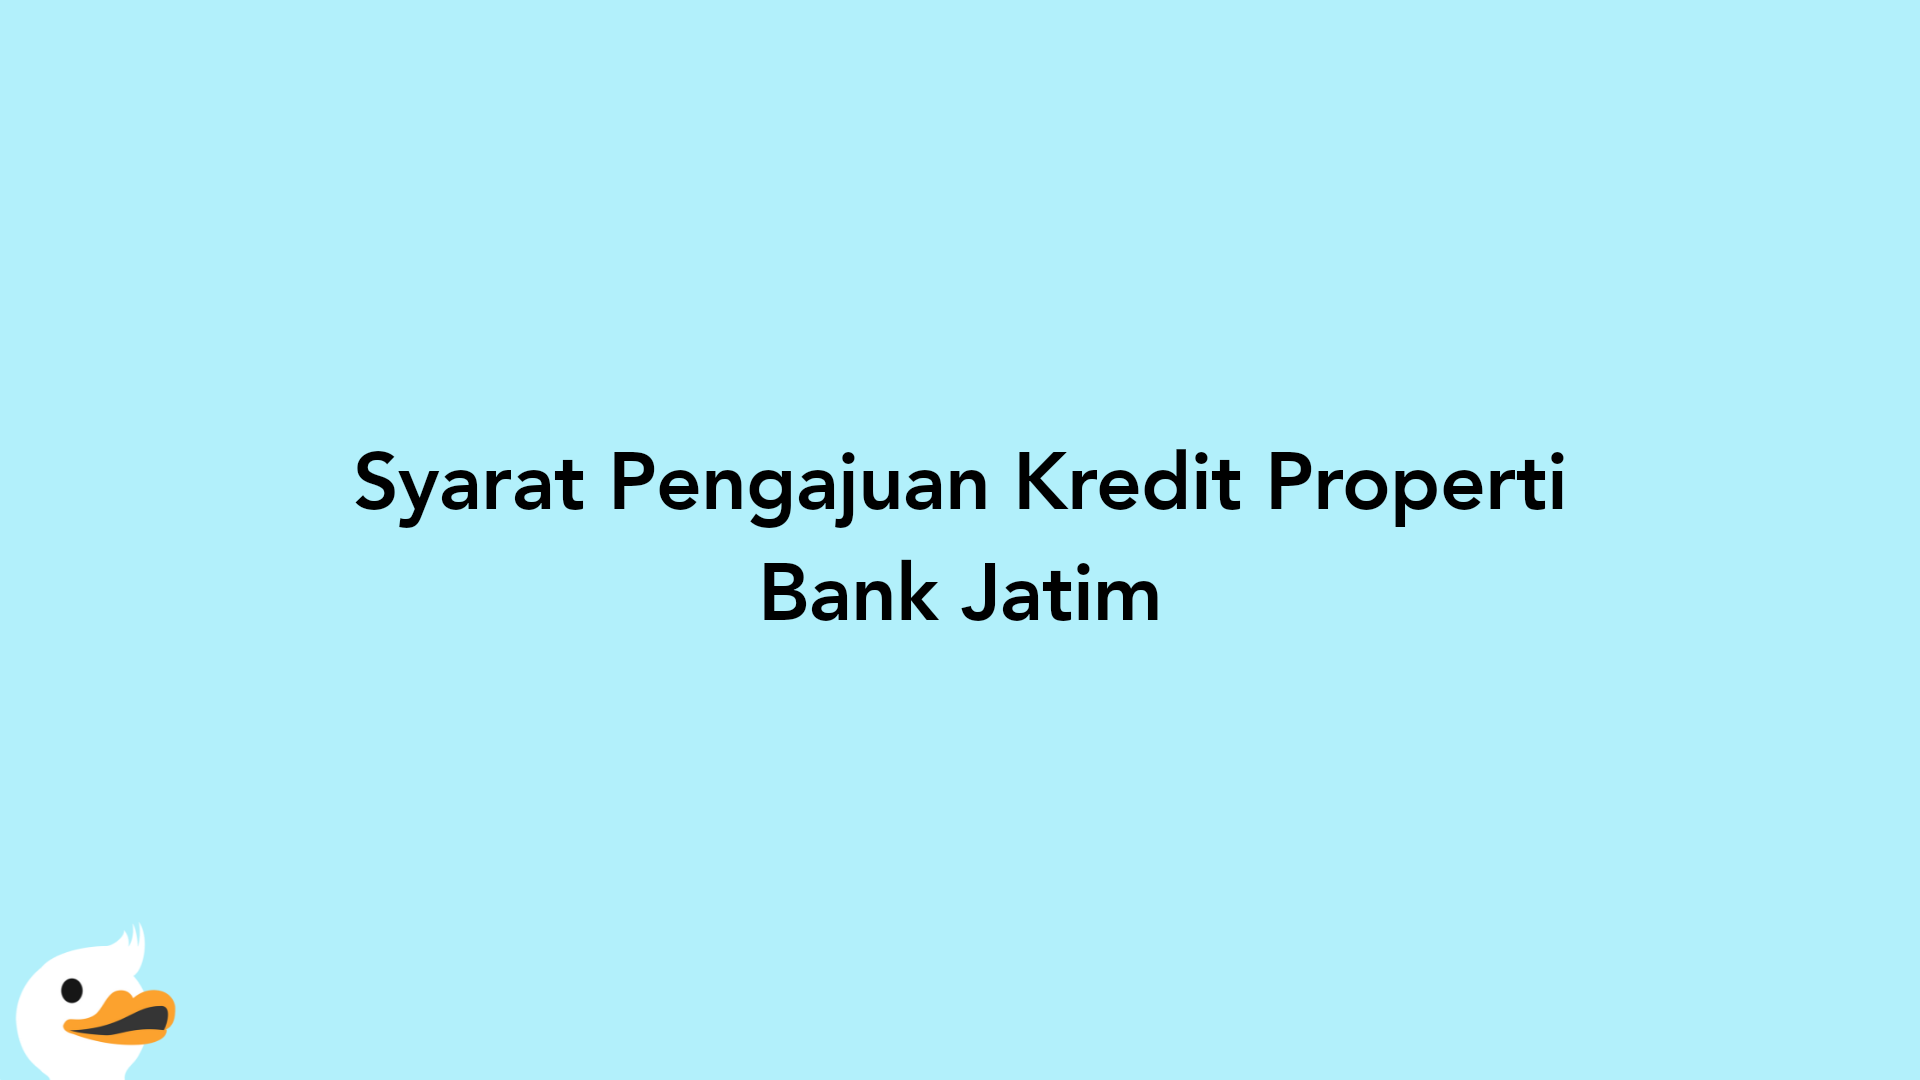 Syarat Pengajuan Kredit Properti Bank Jatim